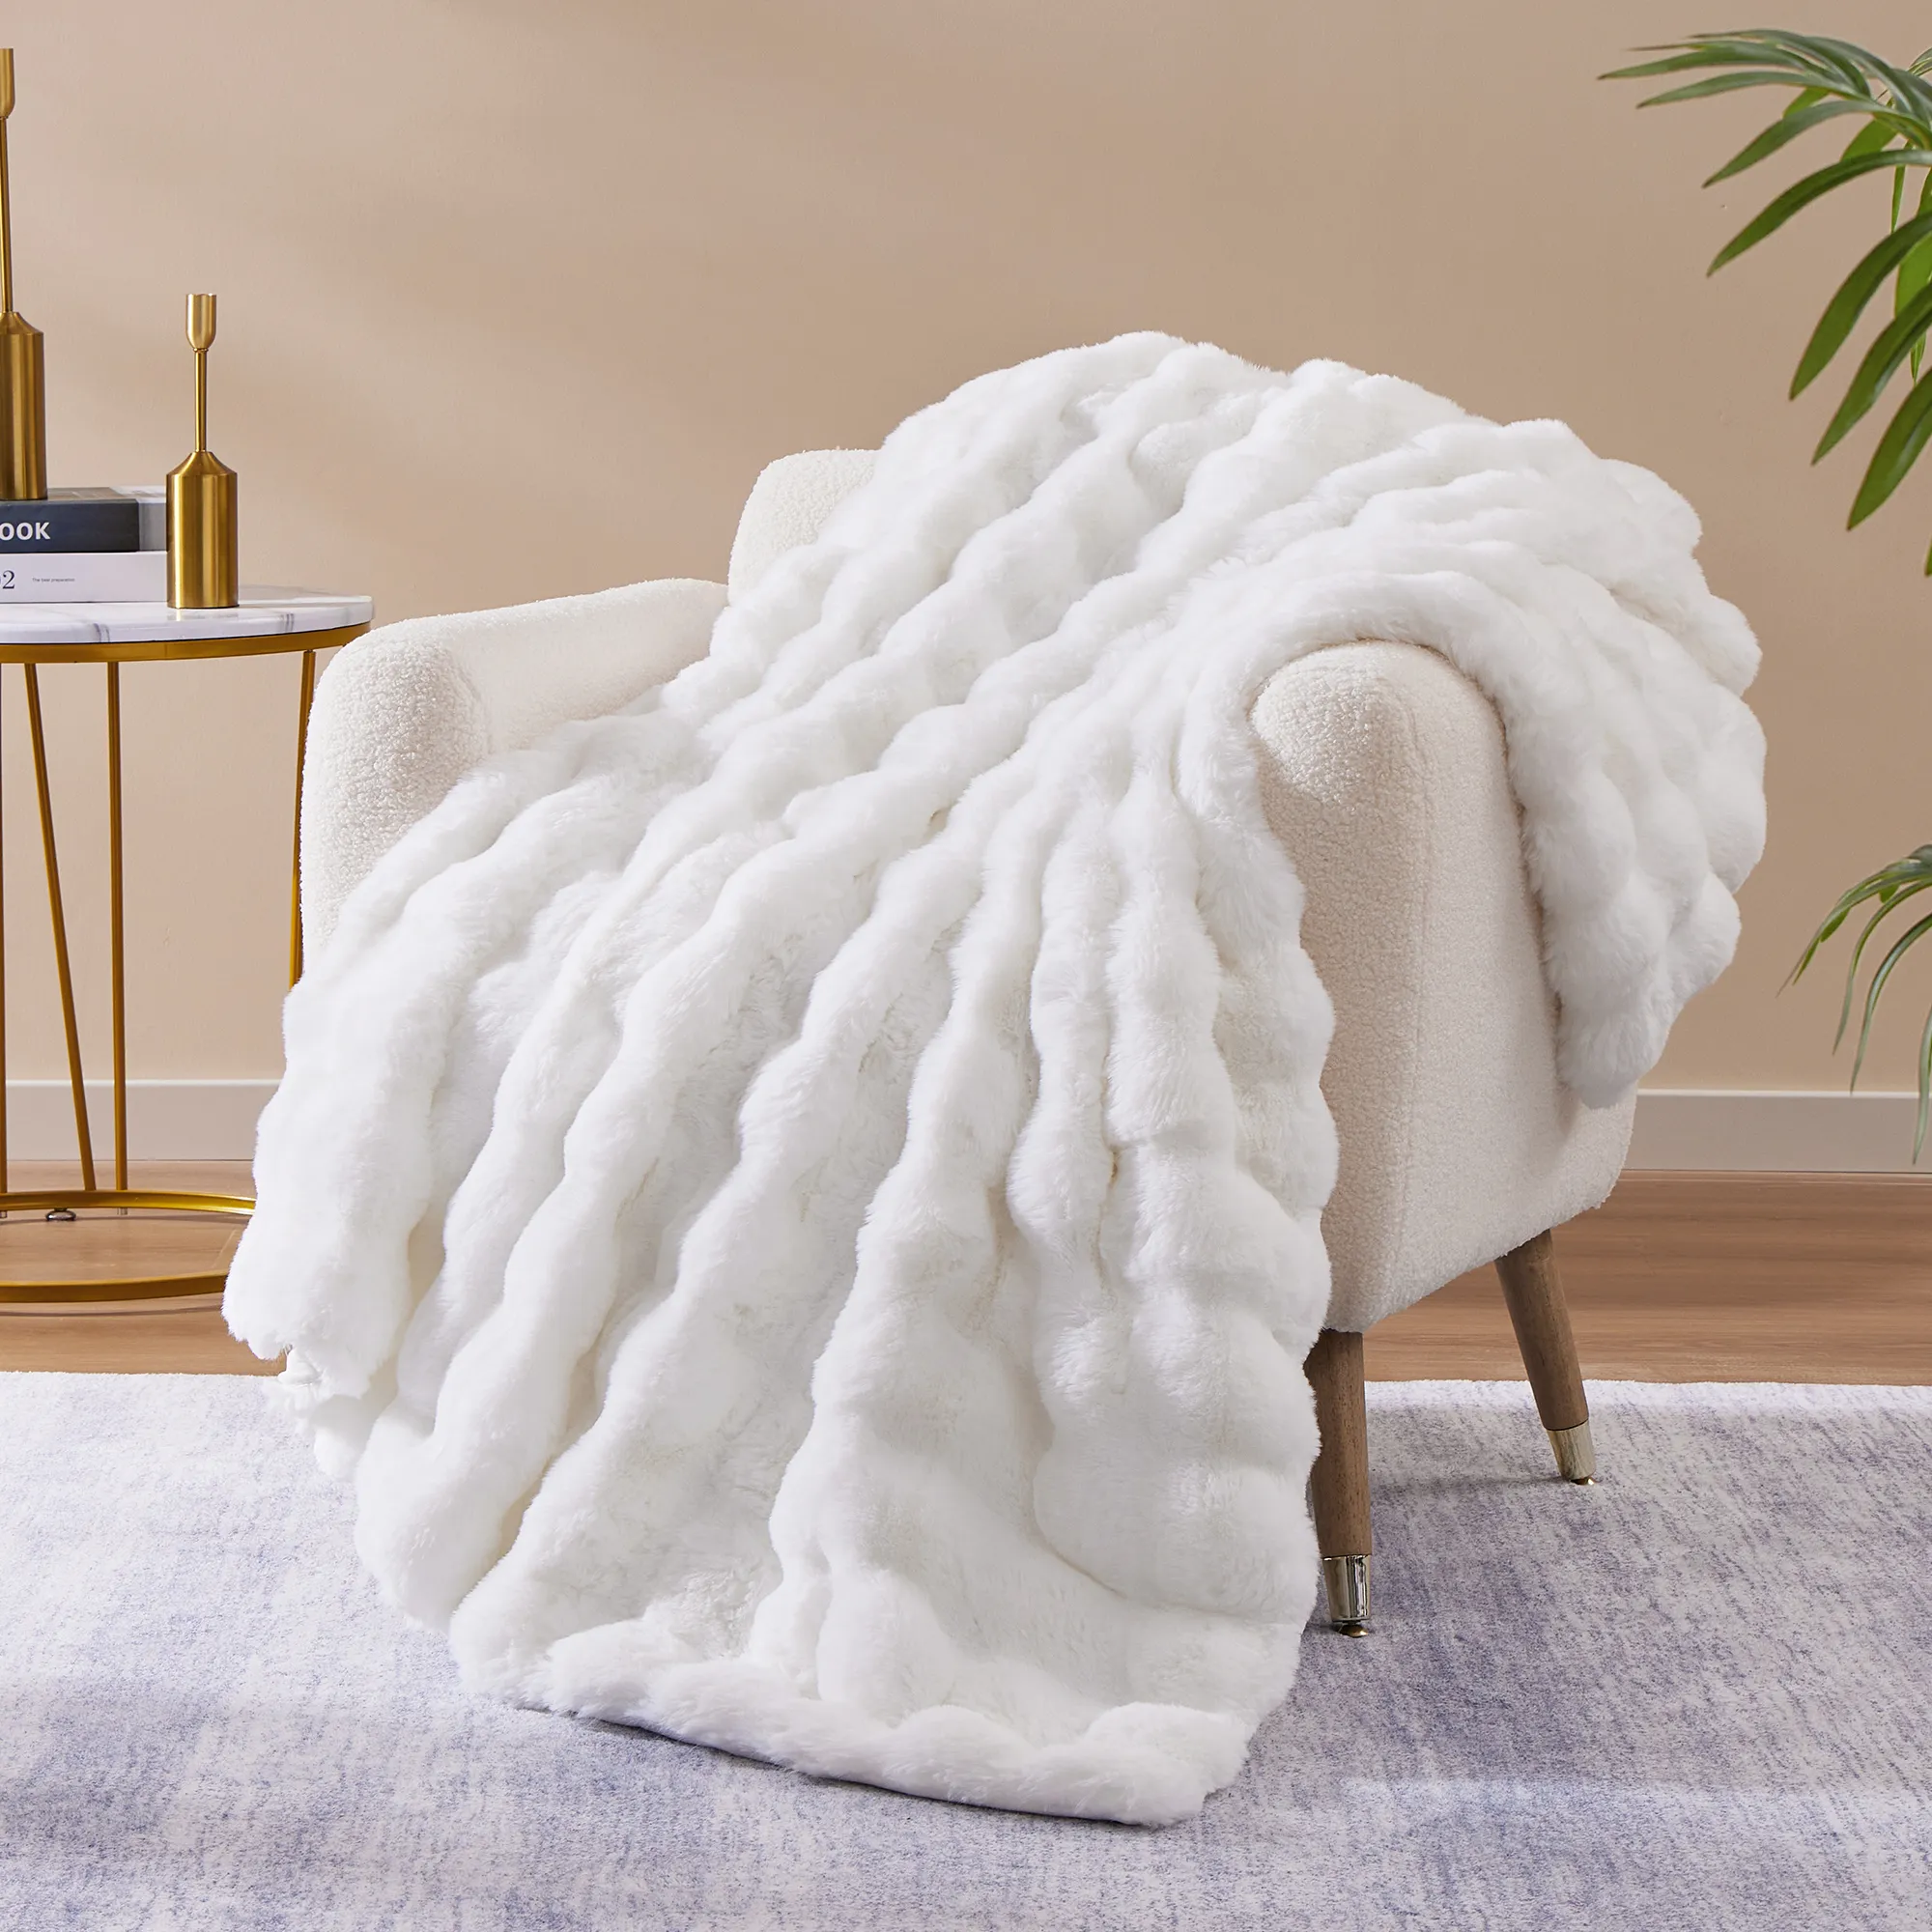 CozyBloom Double-Layer Plush Faux Rabbit Fur Bubble Jacquard Blanket